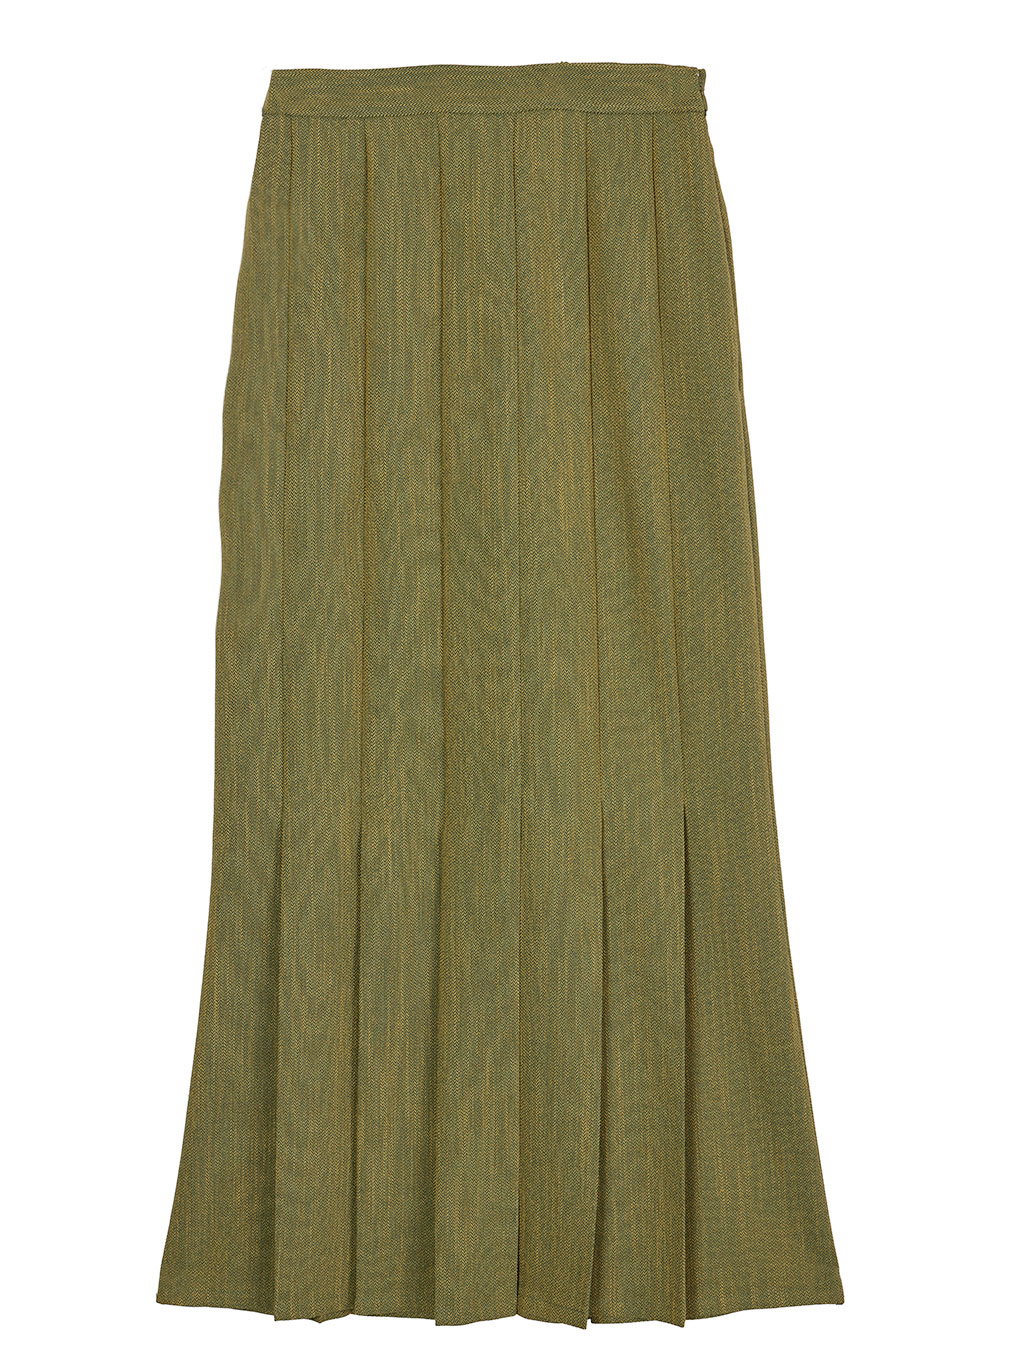 Ameri vintage トレンチスカート カーキ Mサイズ